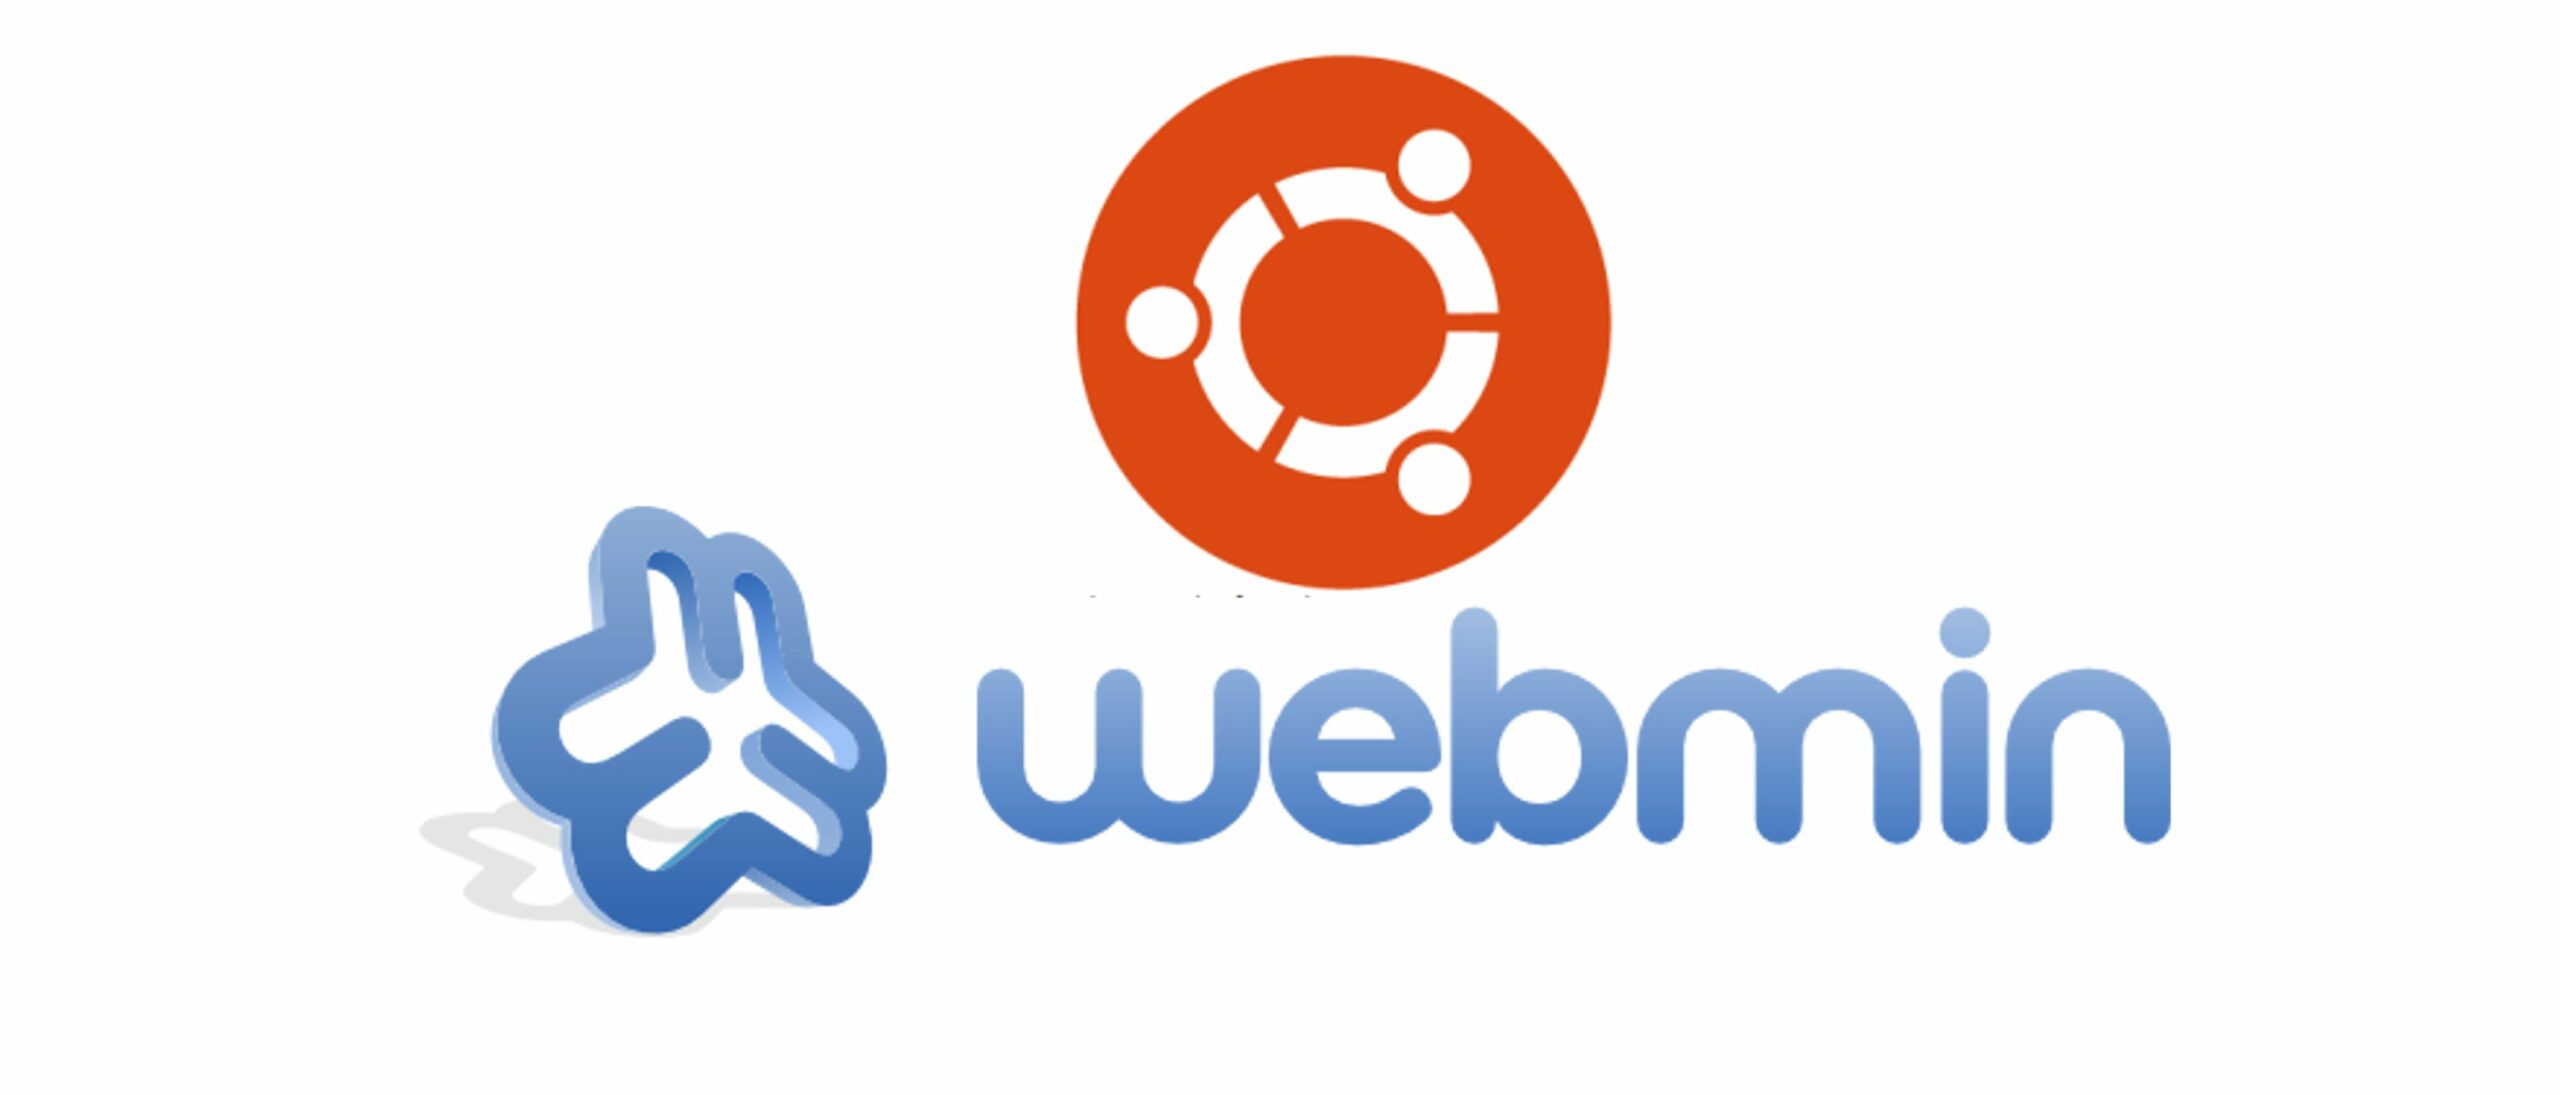 Projet : Gestion des quotas sous Linux avec Webmin